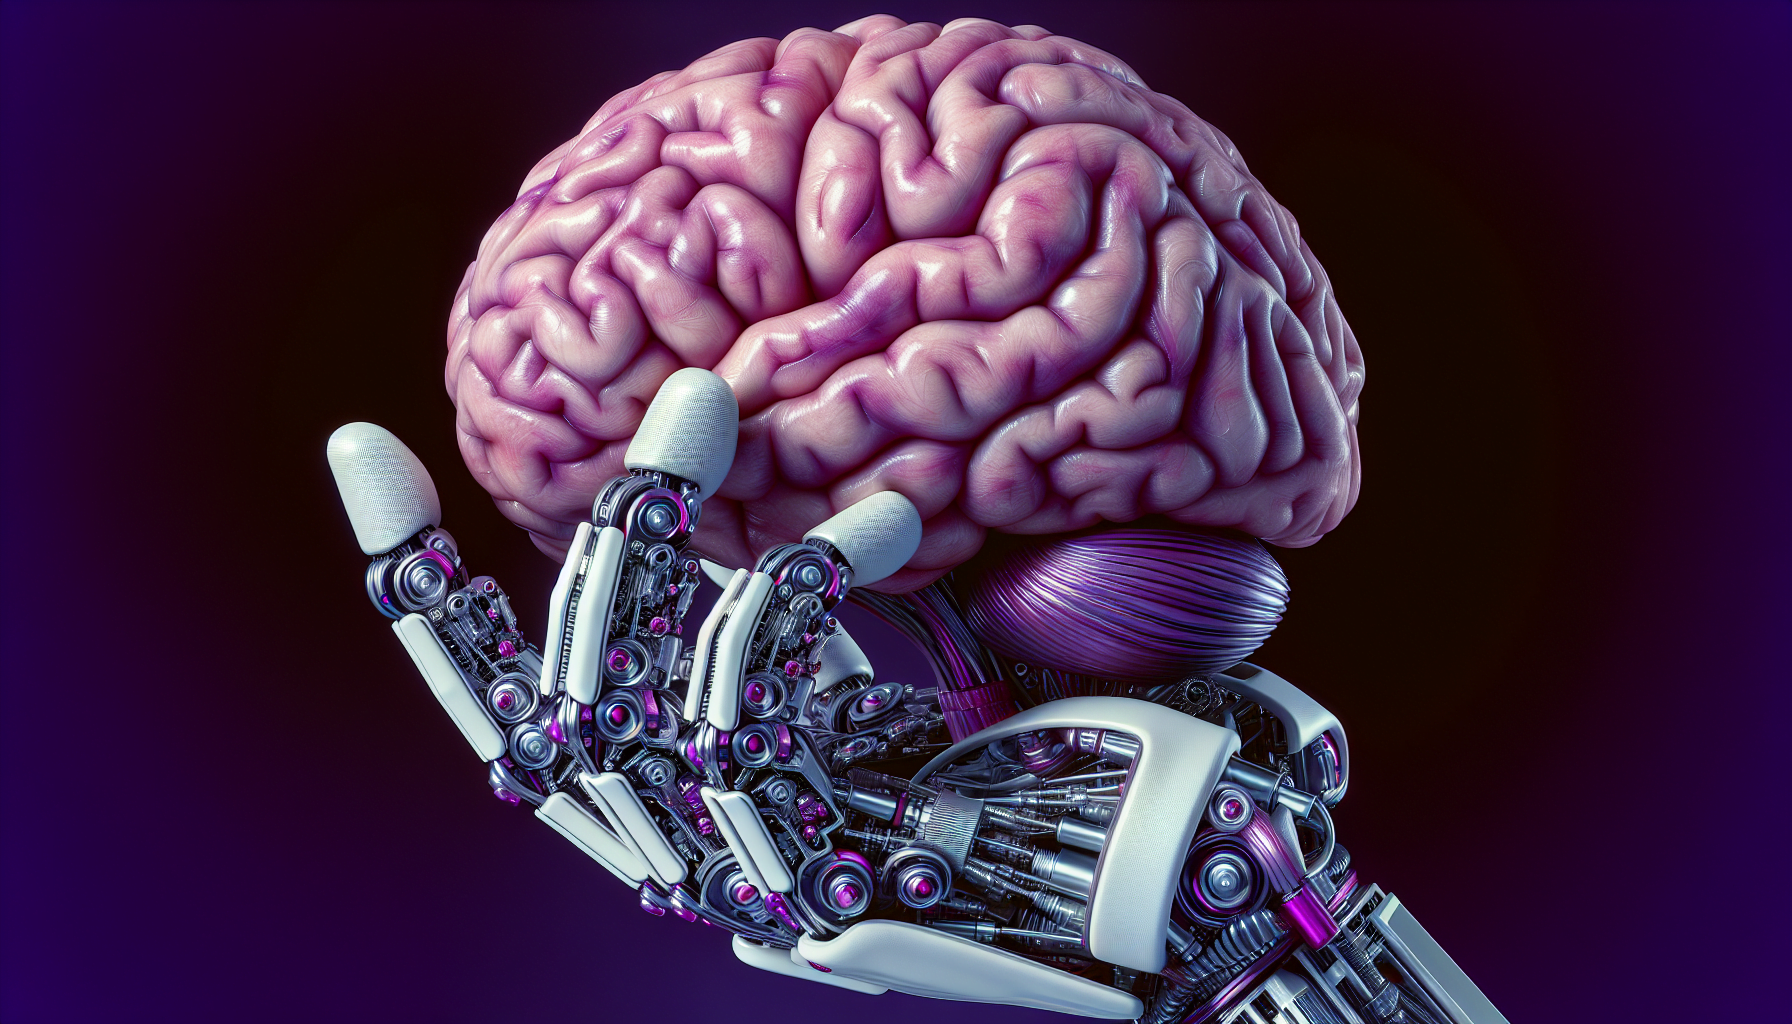 main robot humanoide violet tenant cerveau humain detaille realiste construction futuriste eclat metallique precision conception anatomiquement precis